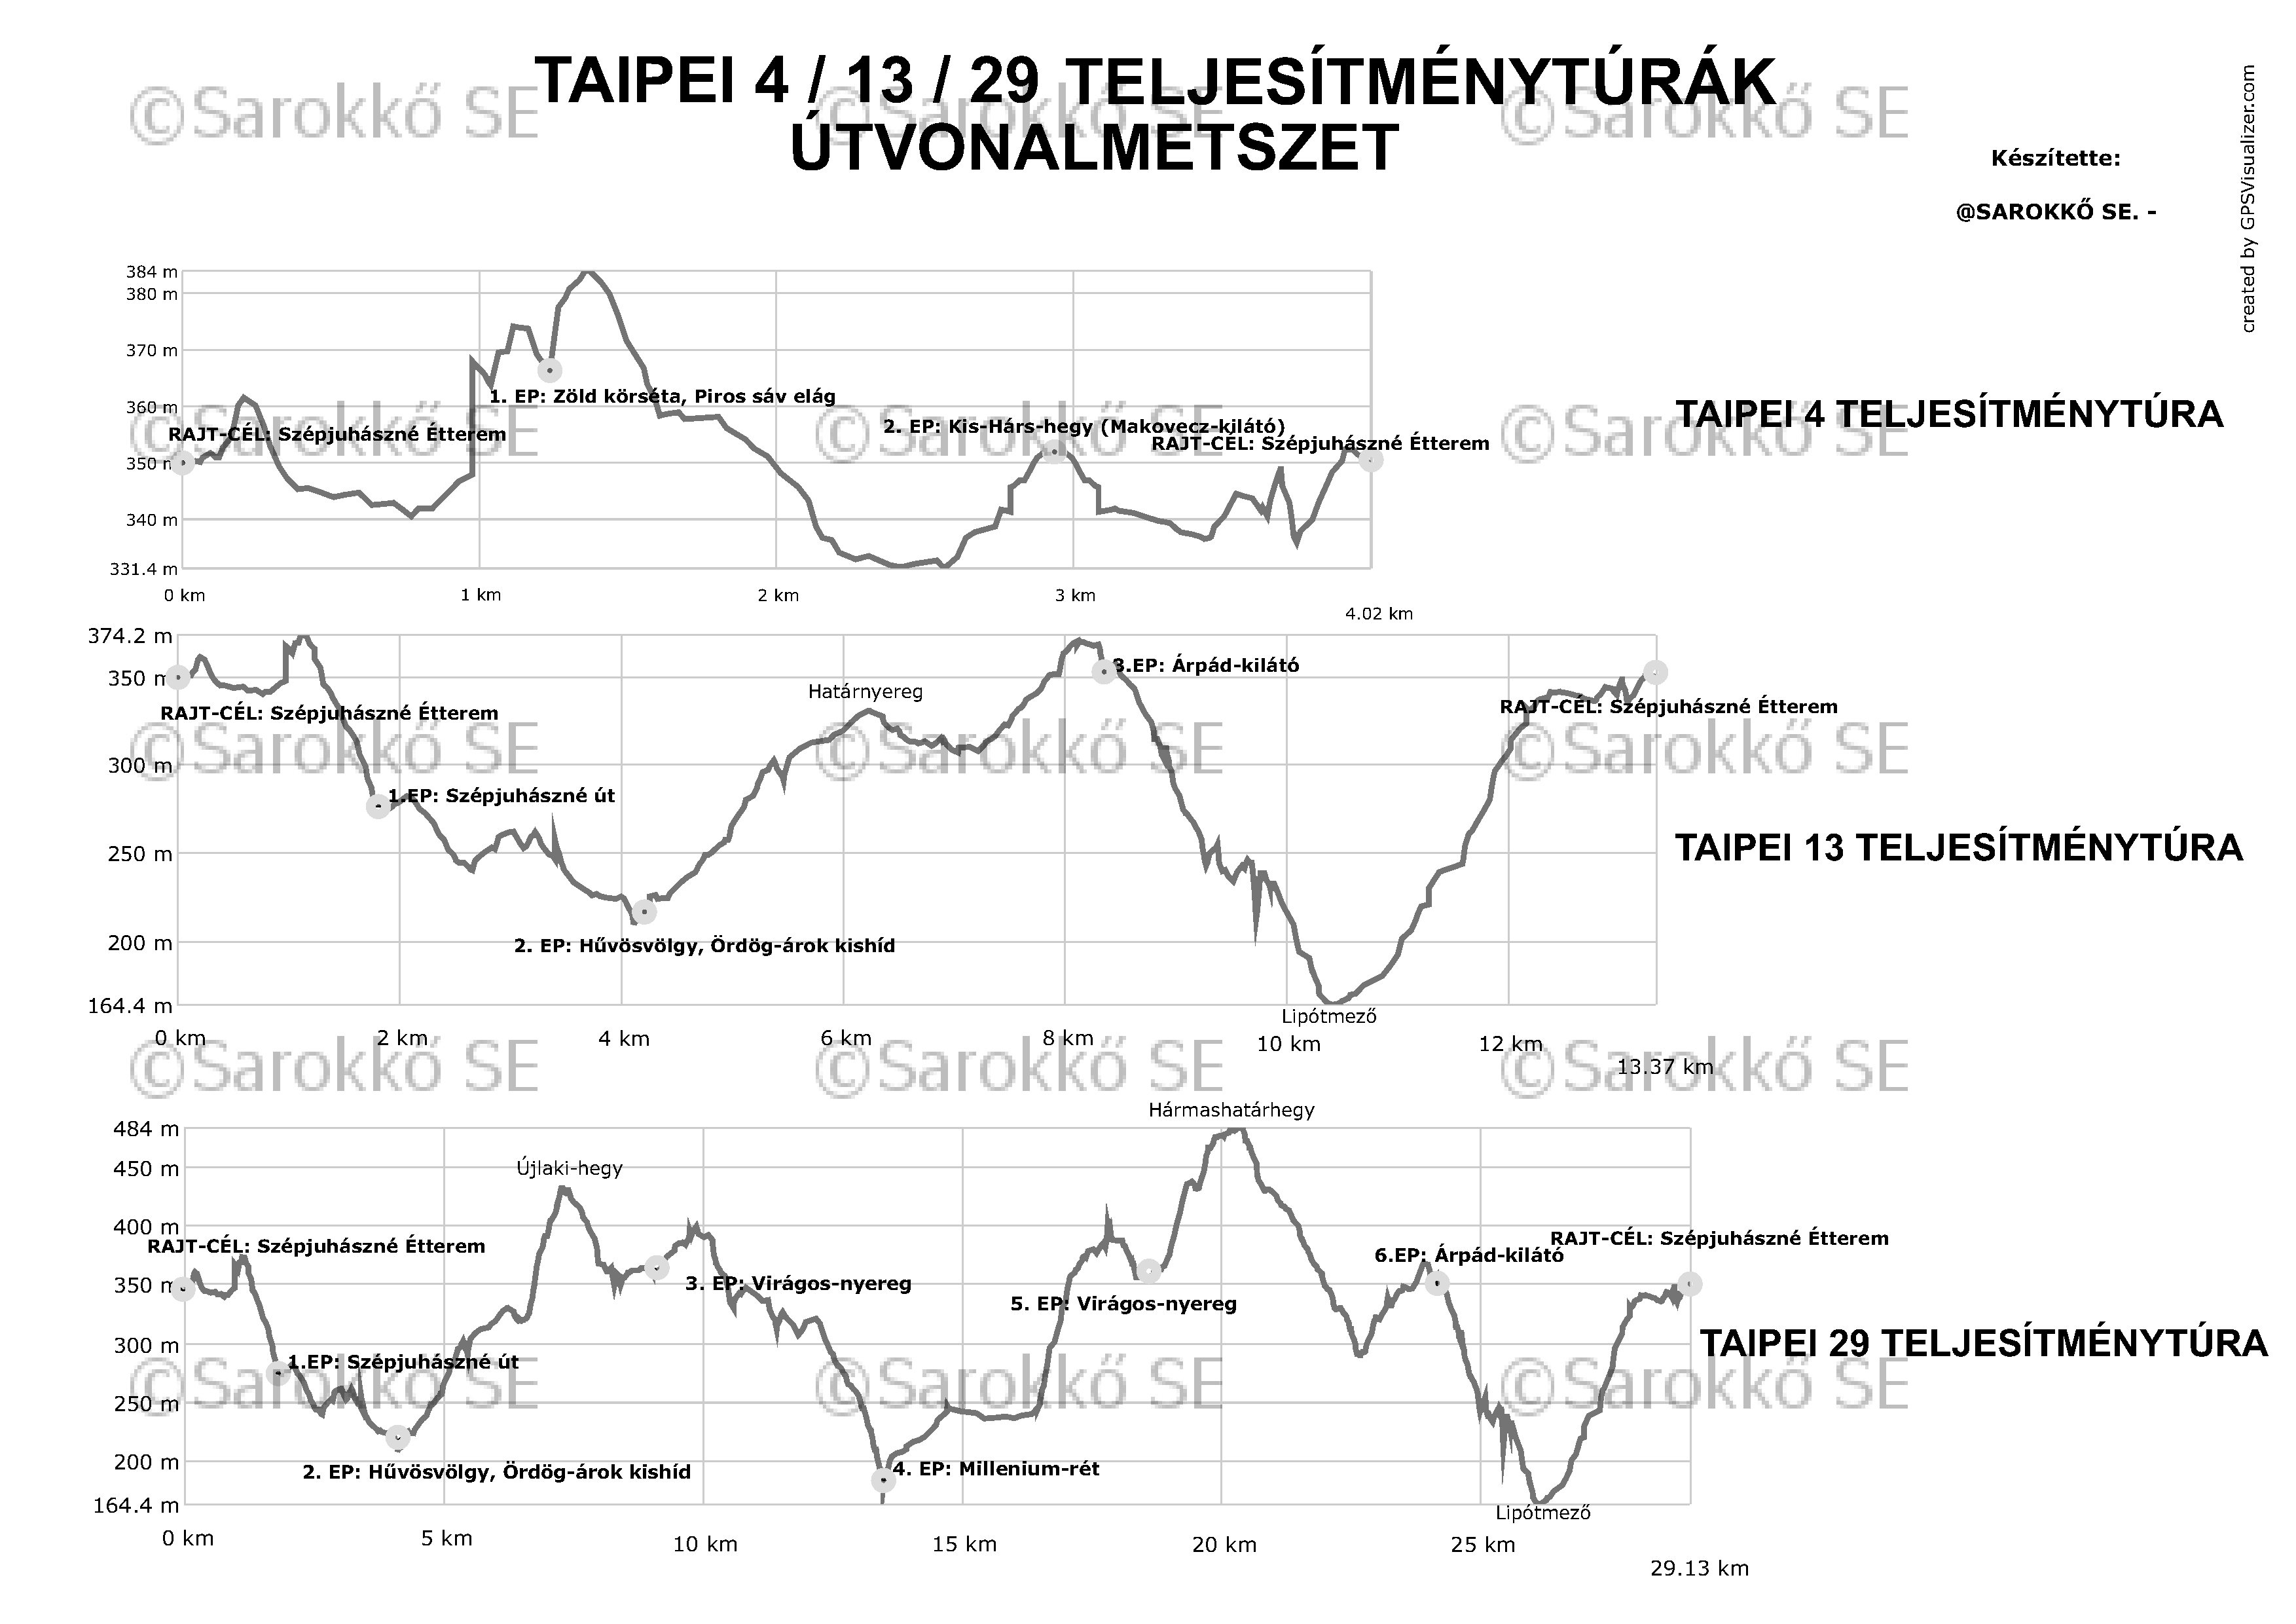 A taipei teljesítménytúrák szürkeárnyalatos útvonalmetszete